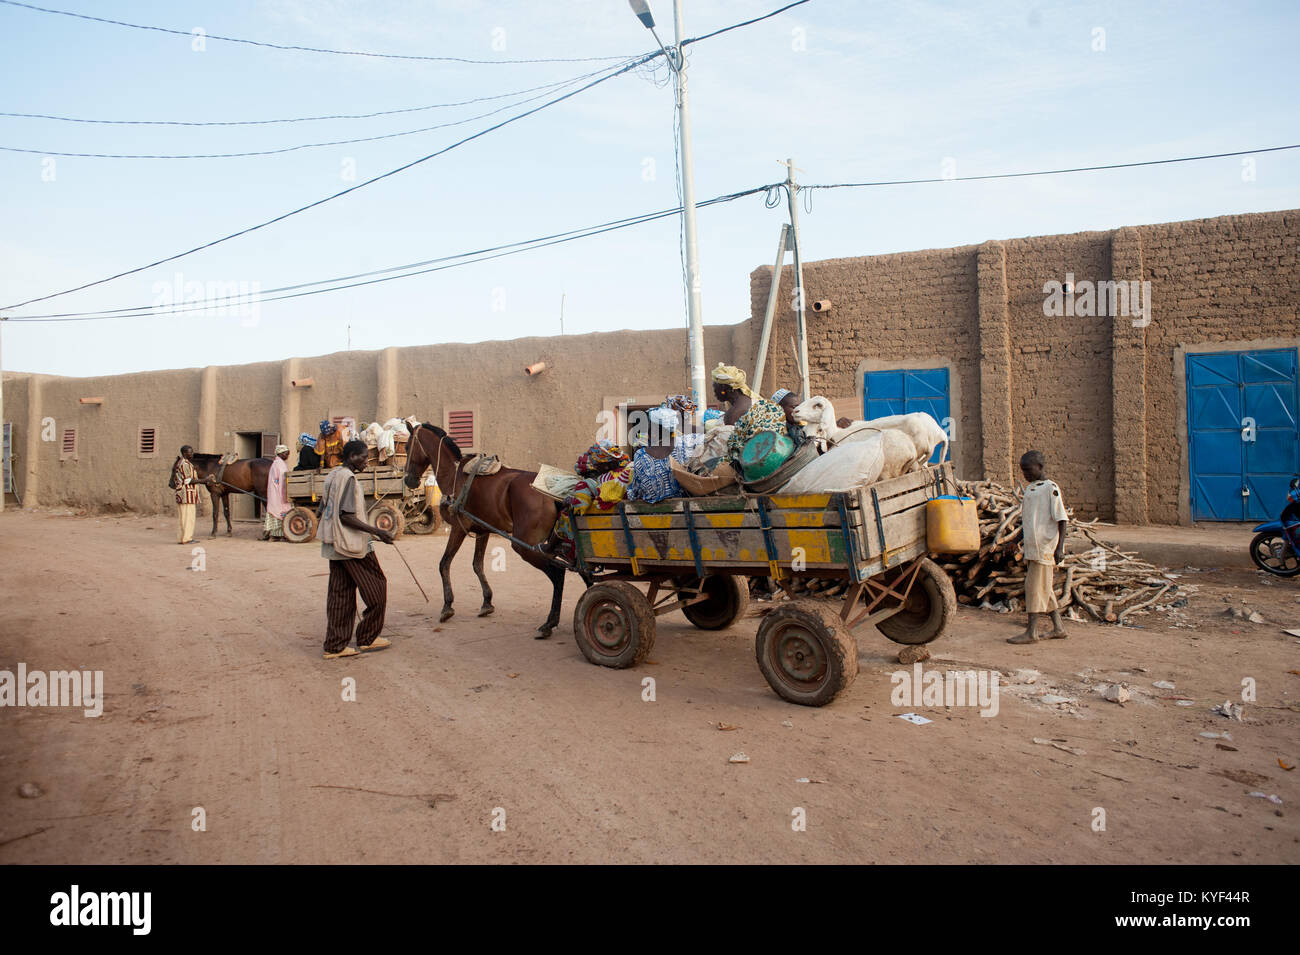 Mali, Afrika - Gruppe unterschiedlichen Alters mit Lebensmitteln ist eine wichtige Aktivität in einem afrikanischen Dorf wie Djenne Stockfoto